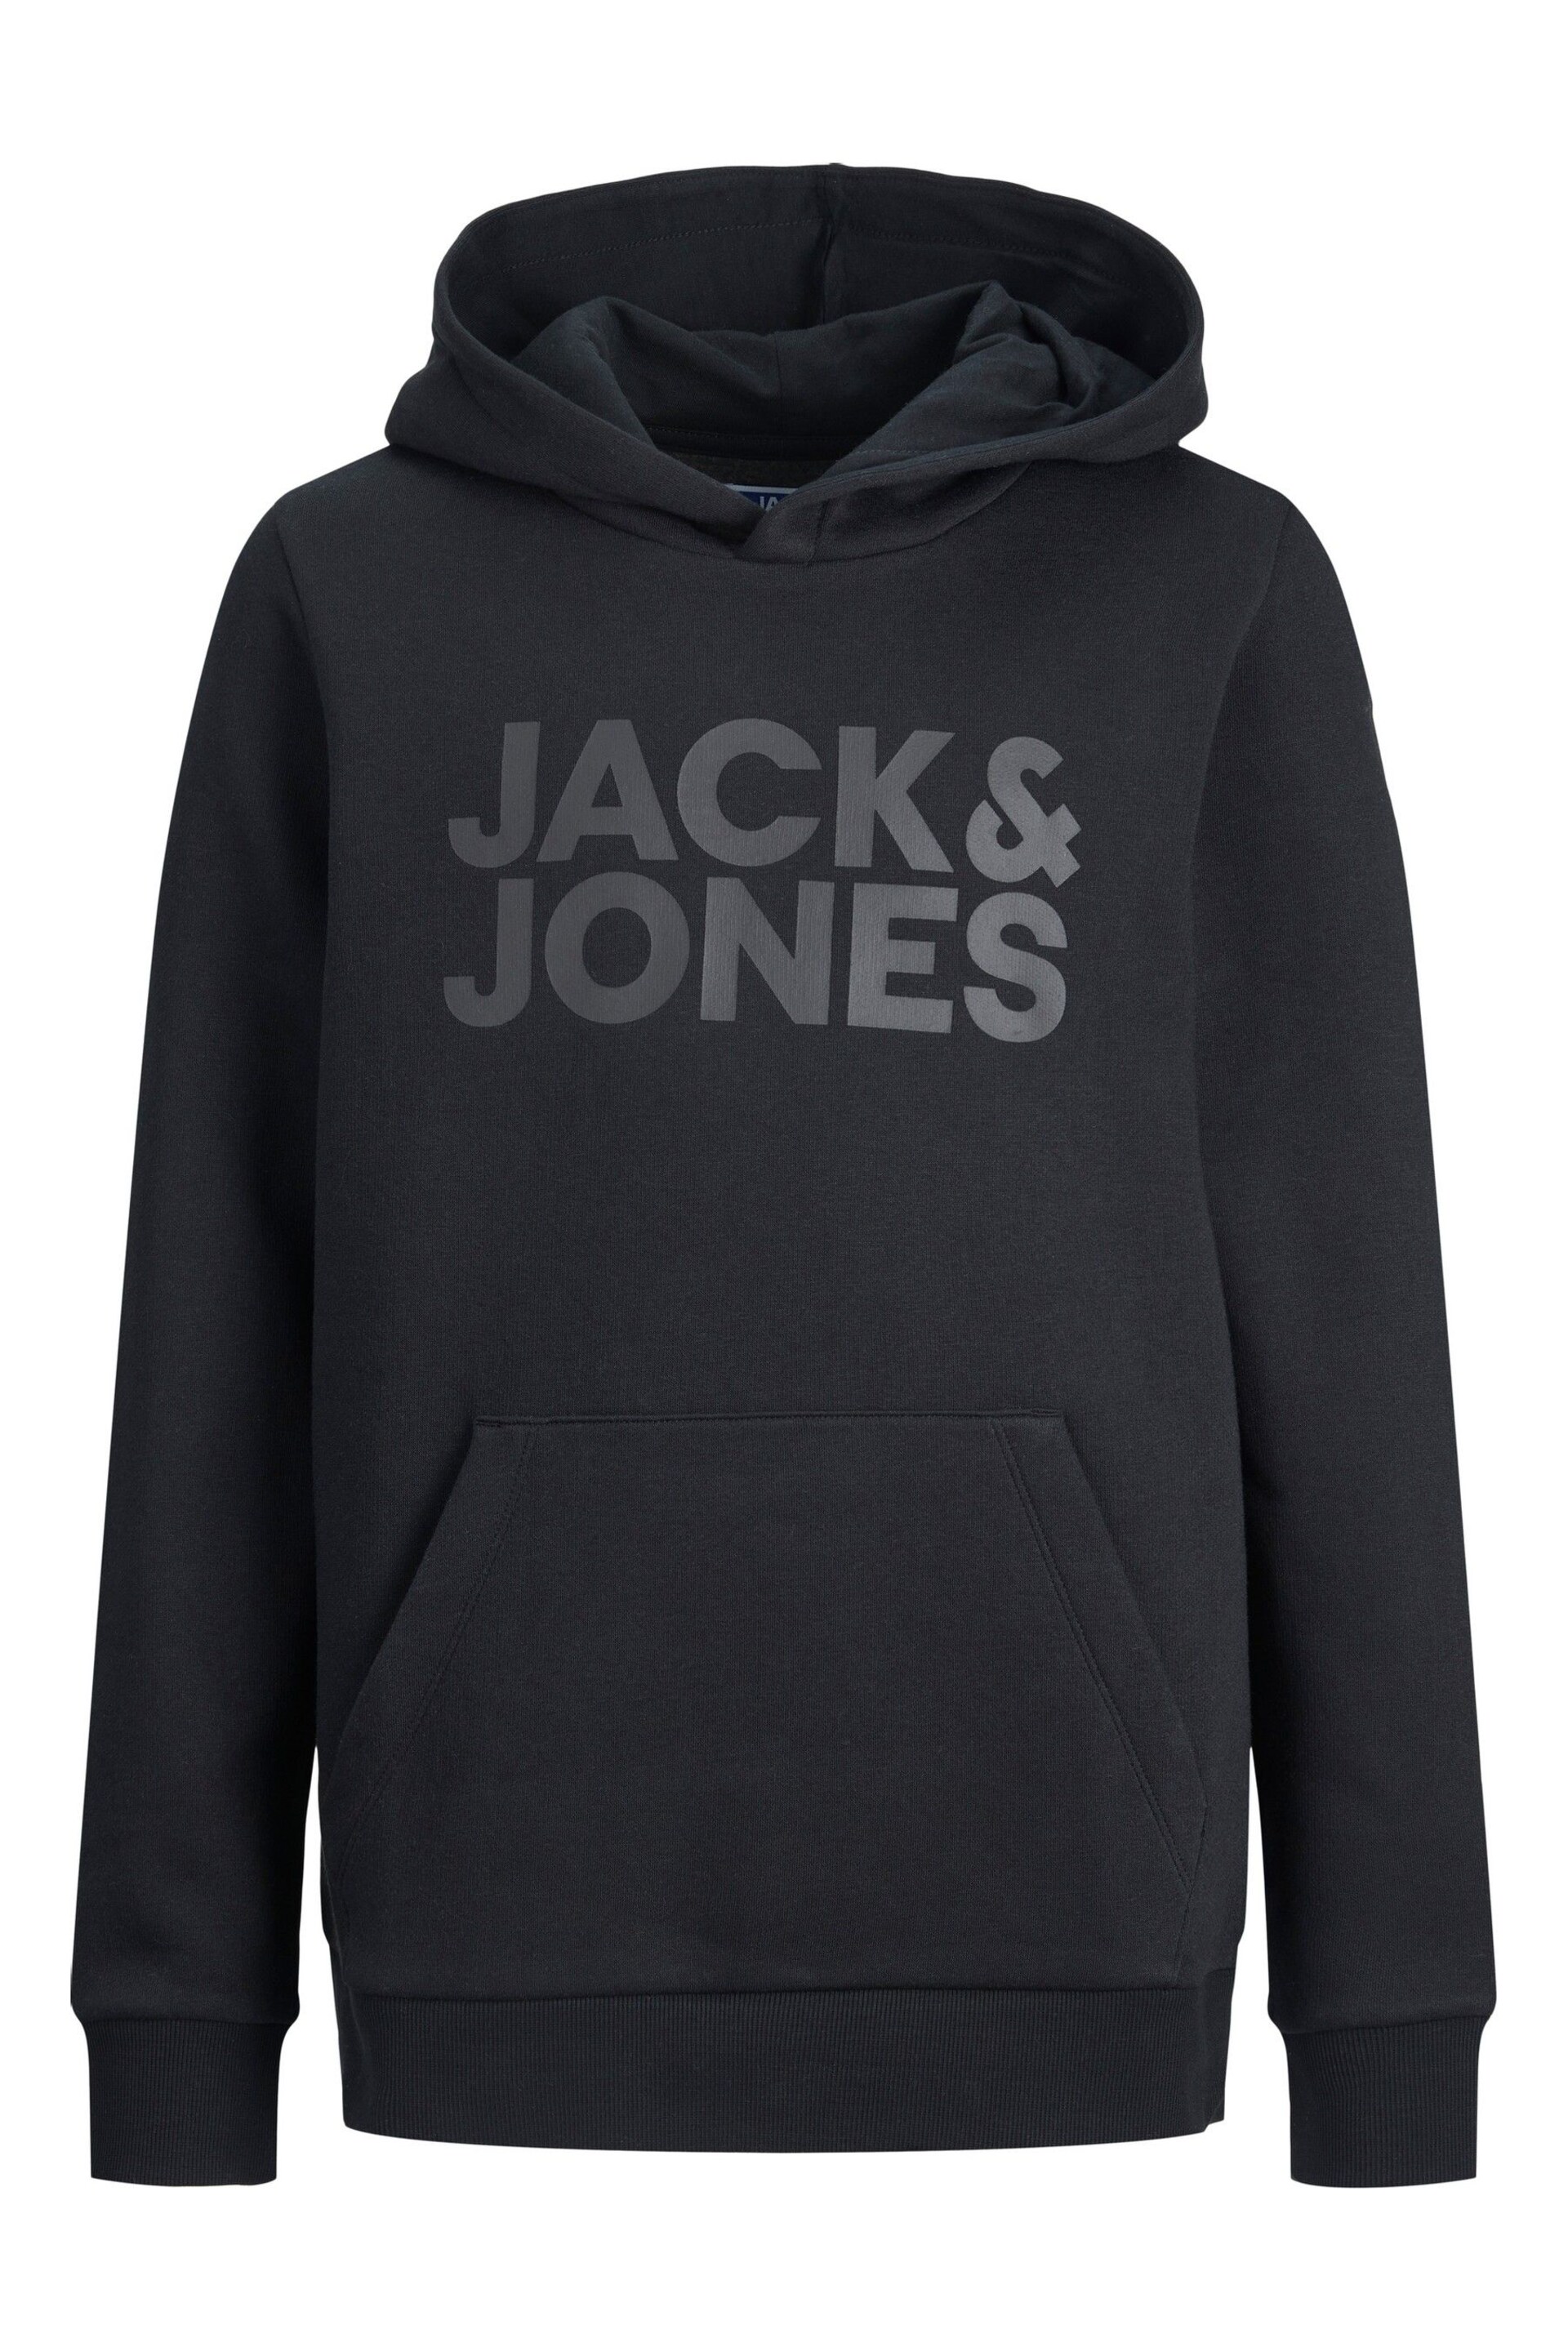 JACK & JONES Black Logo Hoodie - Image 6 of 6